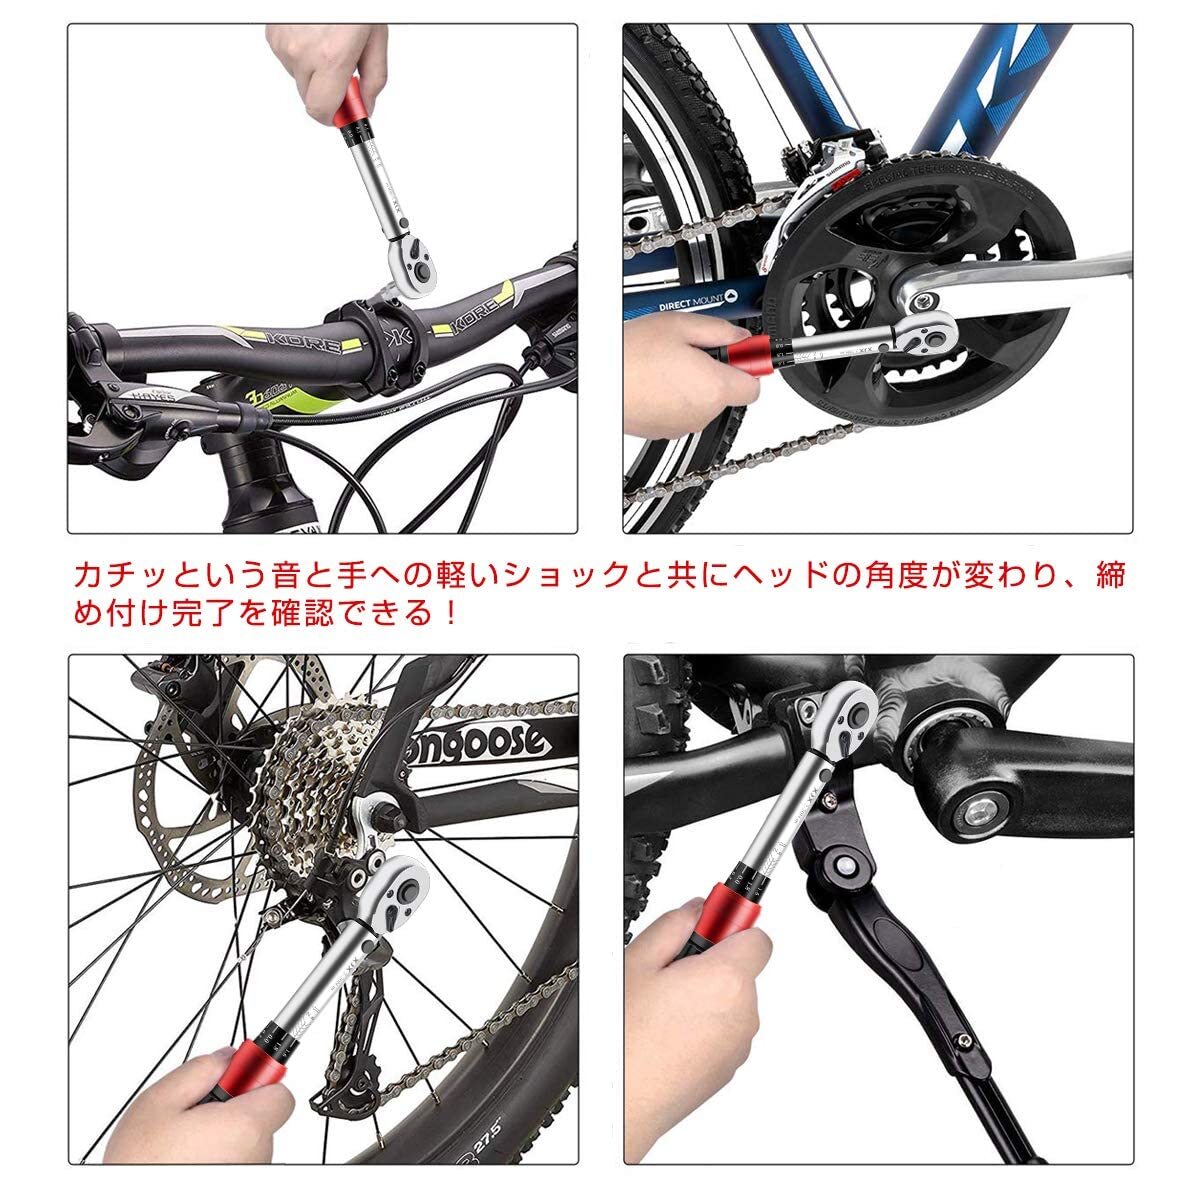 　プレセット型 自転車修理 変換アダプター付 ディープソケット付き トルクレンチ